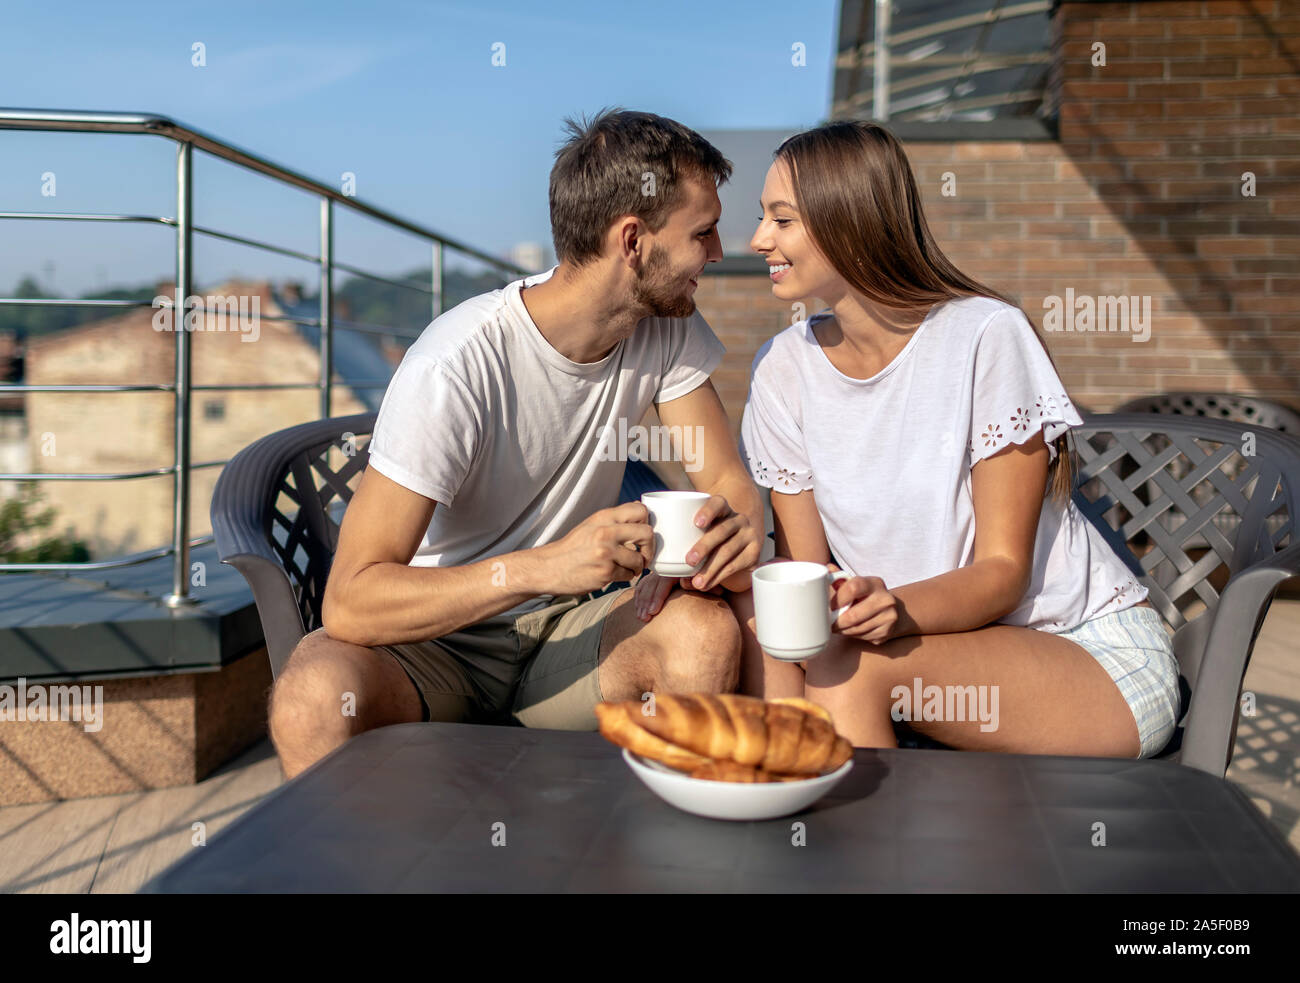 Jeune couple a un entretien doux au cours d'un déjeuner en plein air sur une terrasse Banque D'Images